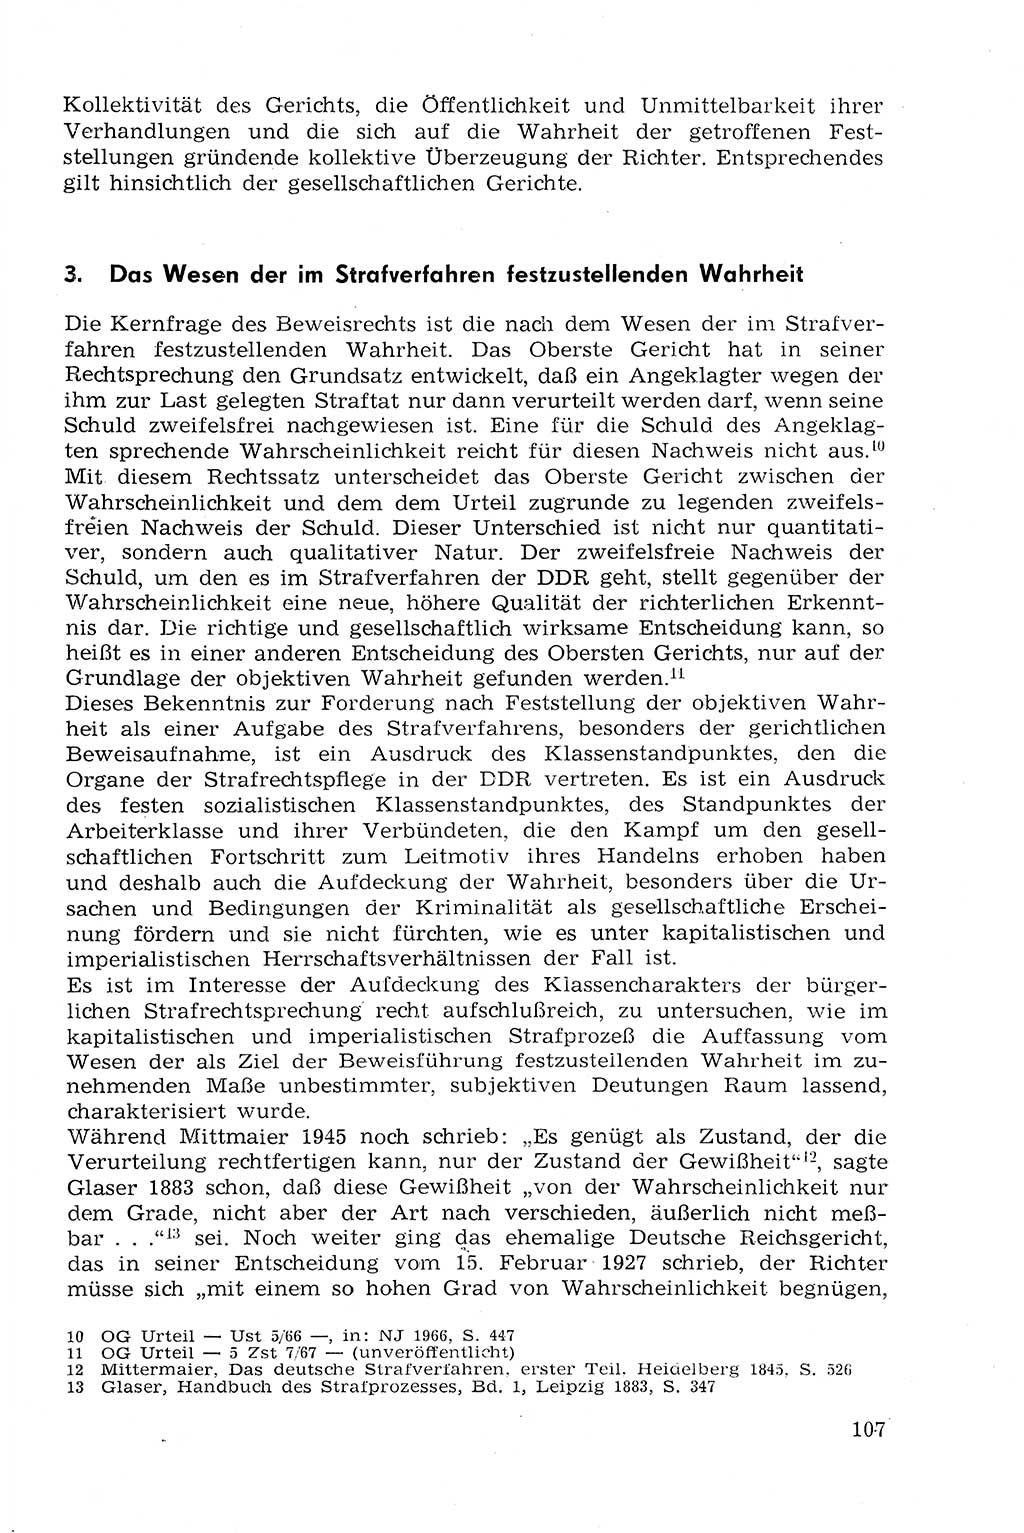 Strafprozeßrecht der DDR (Deutsche Demokratische Republik), Lehrmaterial 1969, Seite 107 (Strafprozeßr. DDR Lehrmat. 1969, S. 107)